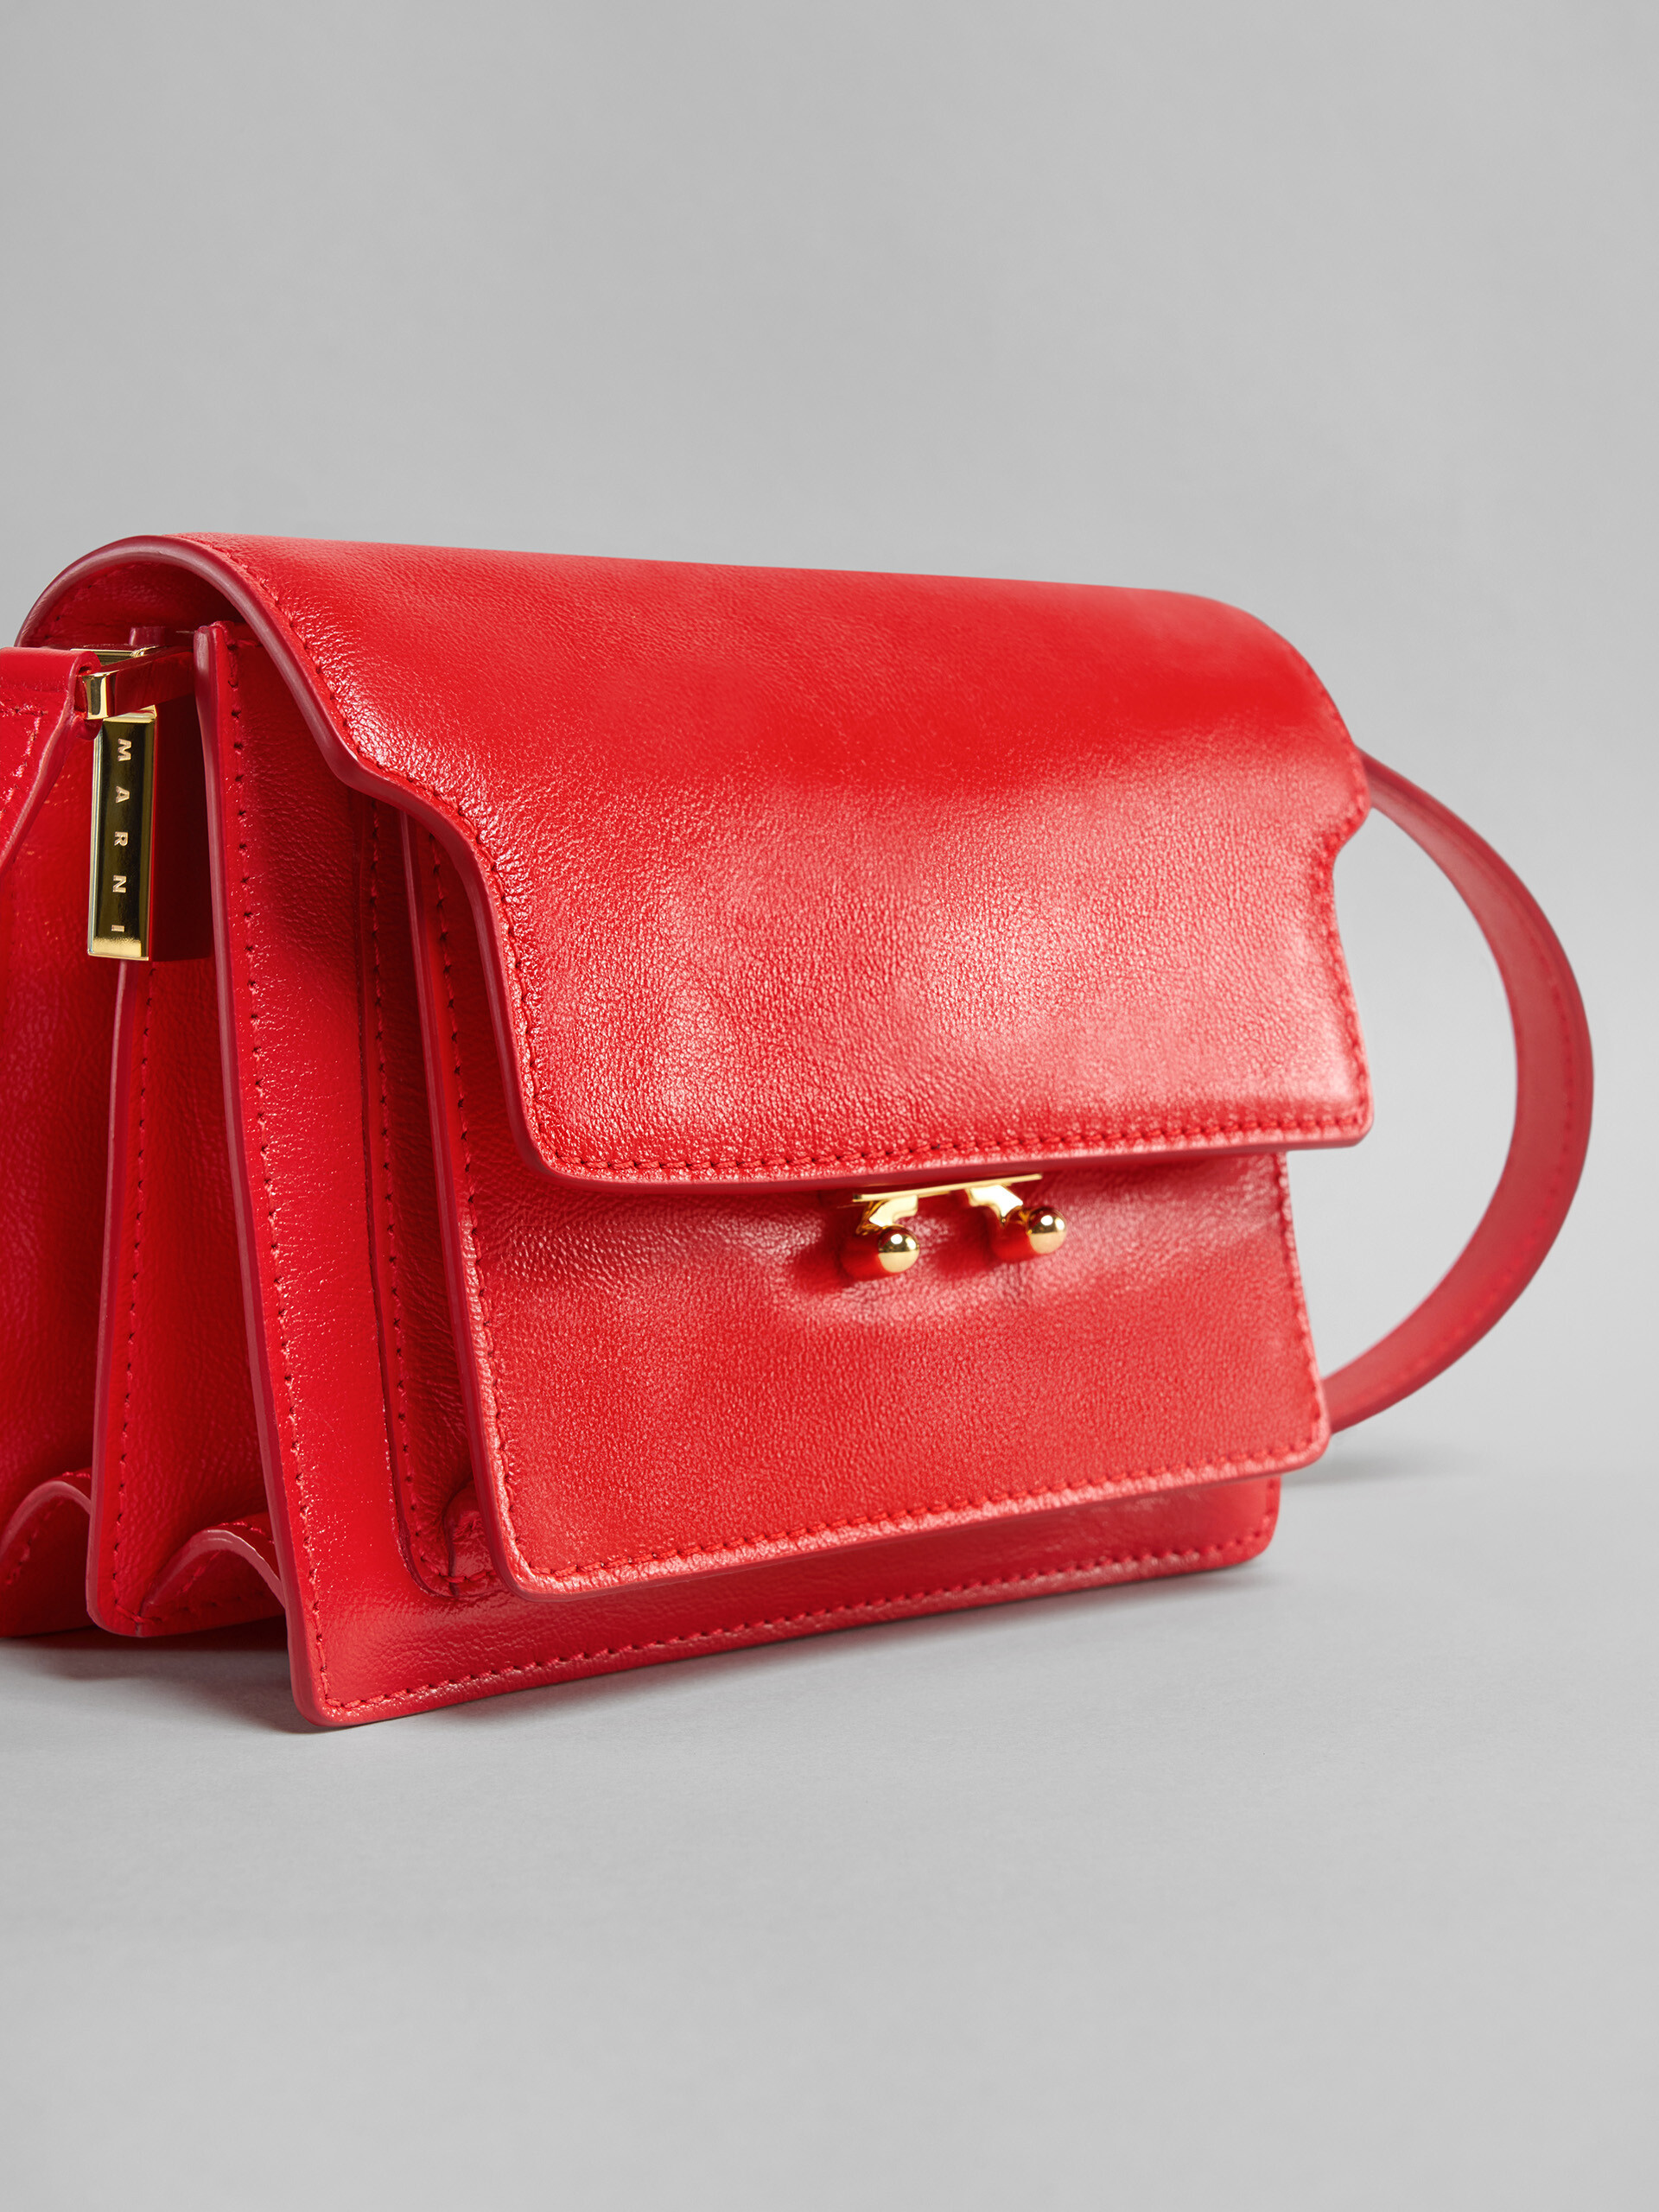 TRUNK SOFT mini bag in red leather - Shoulder Bag - Image 5